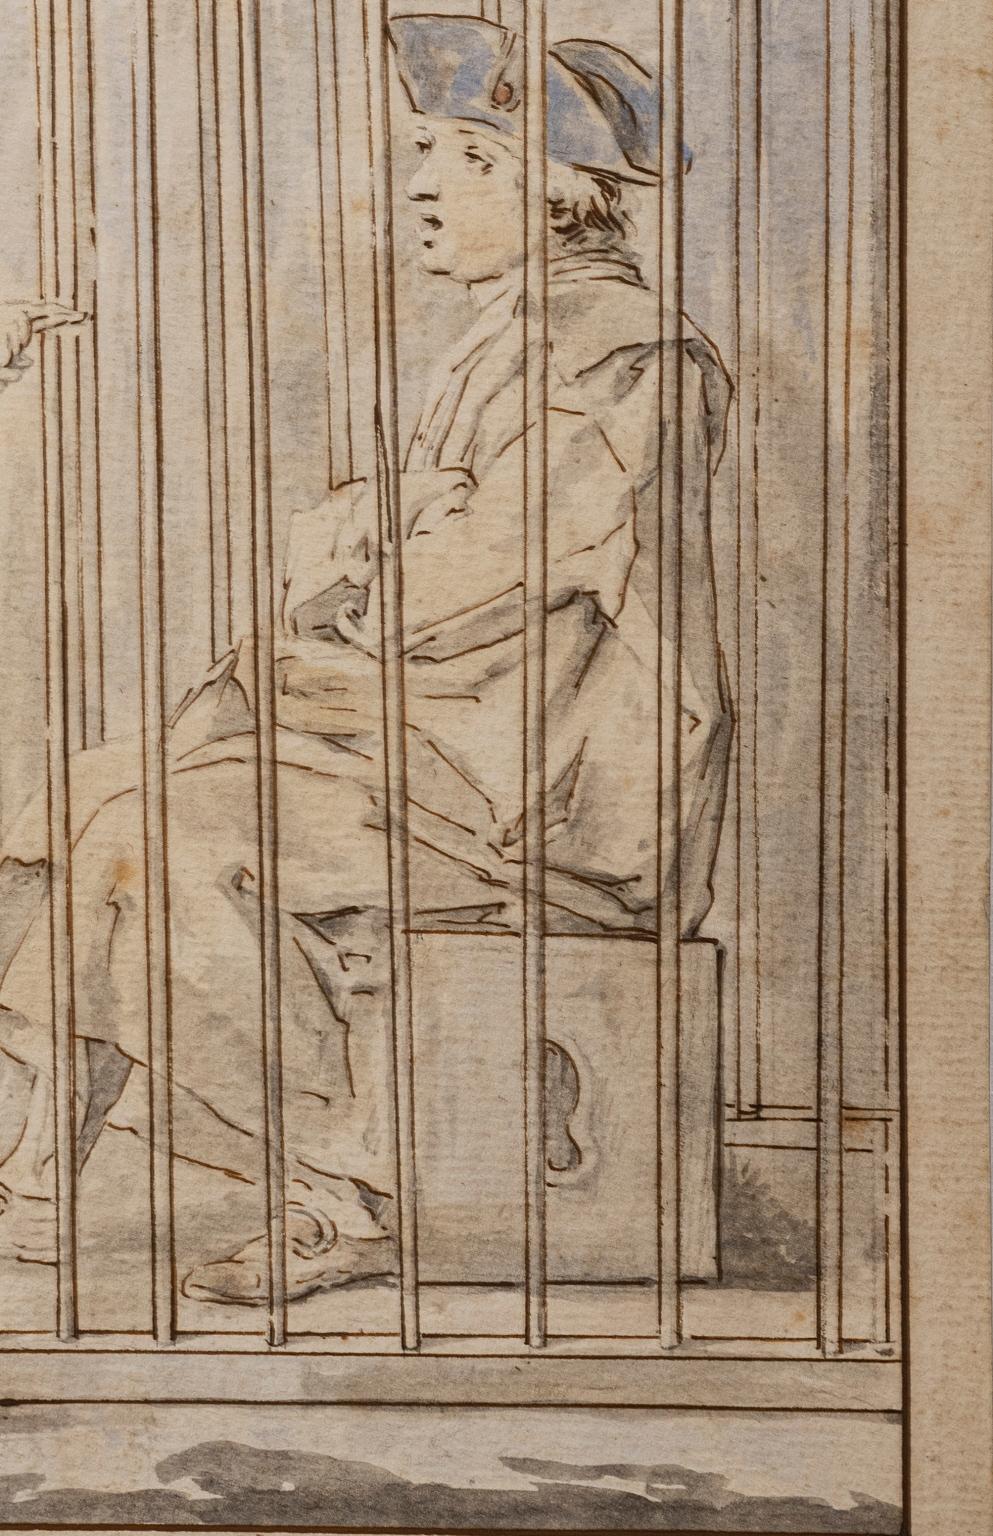 Aquarelles et encre sur papier de Giuseppe Piattoli (Florence 1748 - 1834). 
Il s'agit du dessin préparatoire d'une des 40 planches imprimées par Carlo Lasinio (Trévise, 1759 - Pise 1838) pour la première série des 